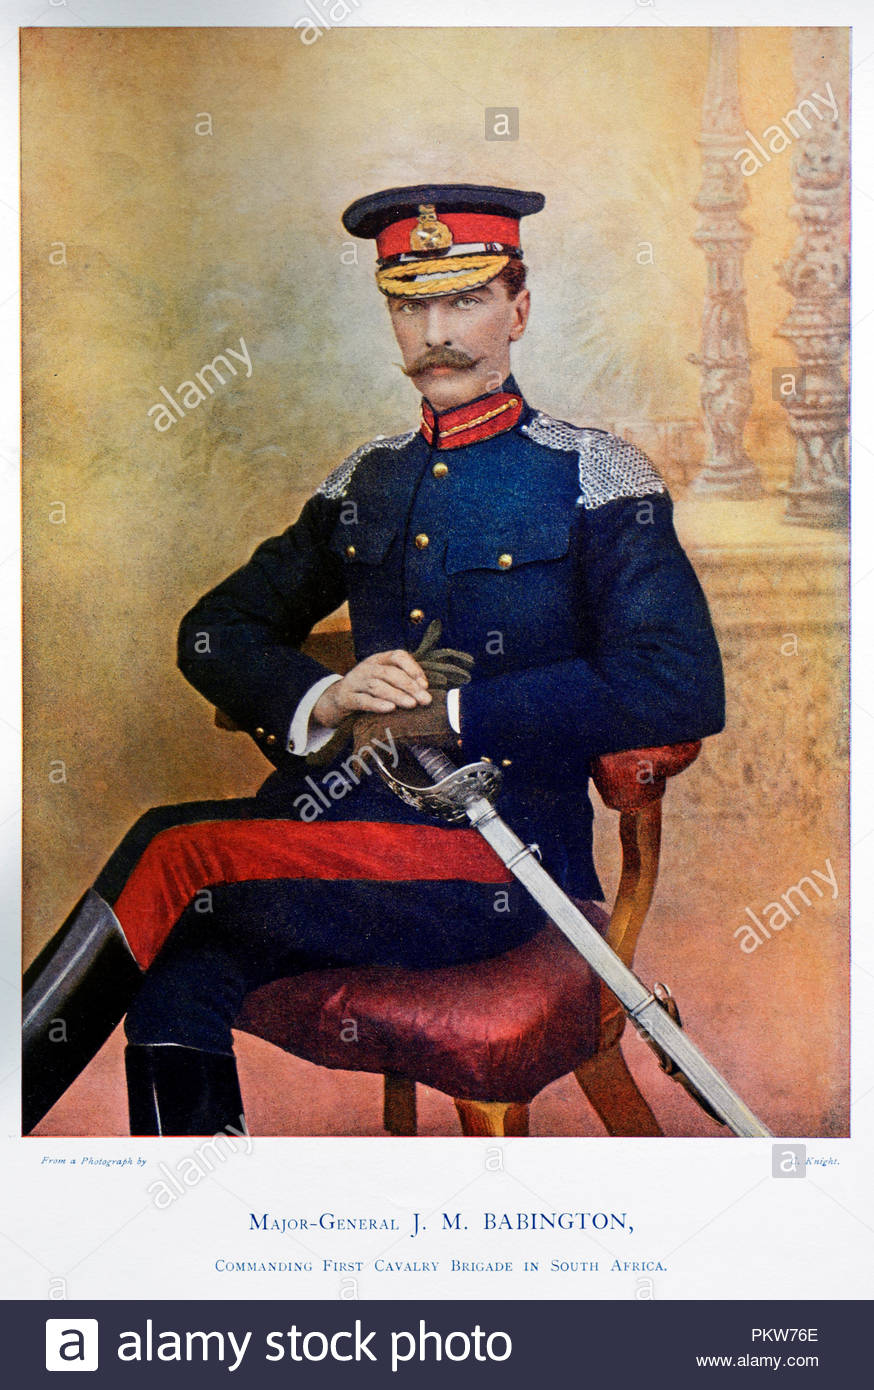 Le Lieutenant-général Sir James Melville Babington KCB, KCMG , 1854 - 1936, était un officier de l'Armée britannique et un leader reconnu de la cavalerie, fait un nom pour lui-même pour ses actions dans la Deuxième Guerre des Boers. Illustration couleur à partir de 1900 Banque D'Images